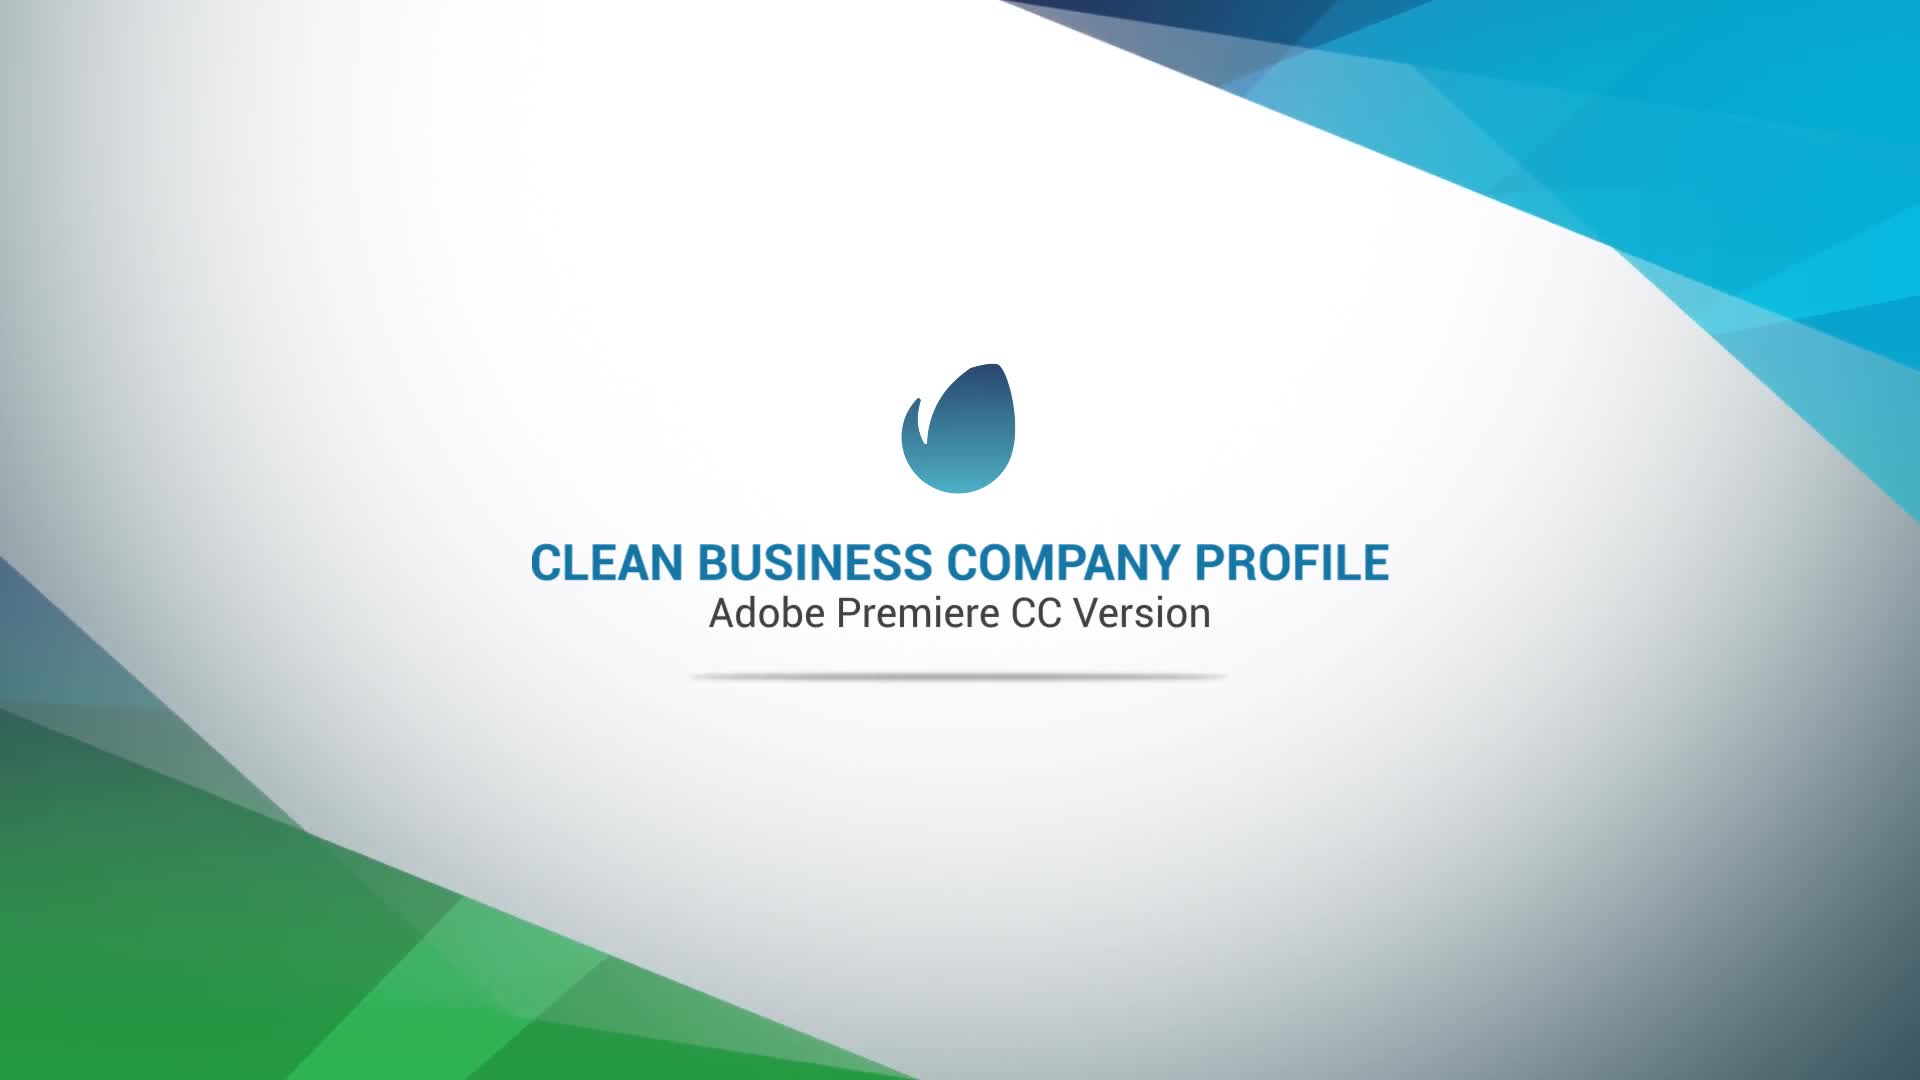 Clean Business Company Profile Videohive 23833906 Premiere Pro Image 1